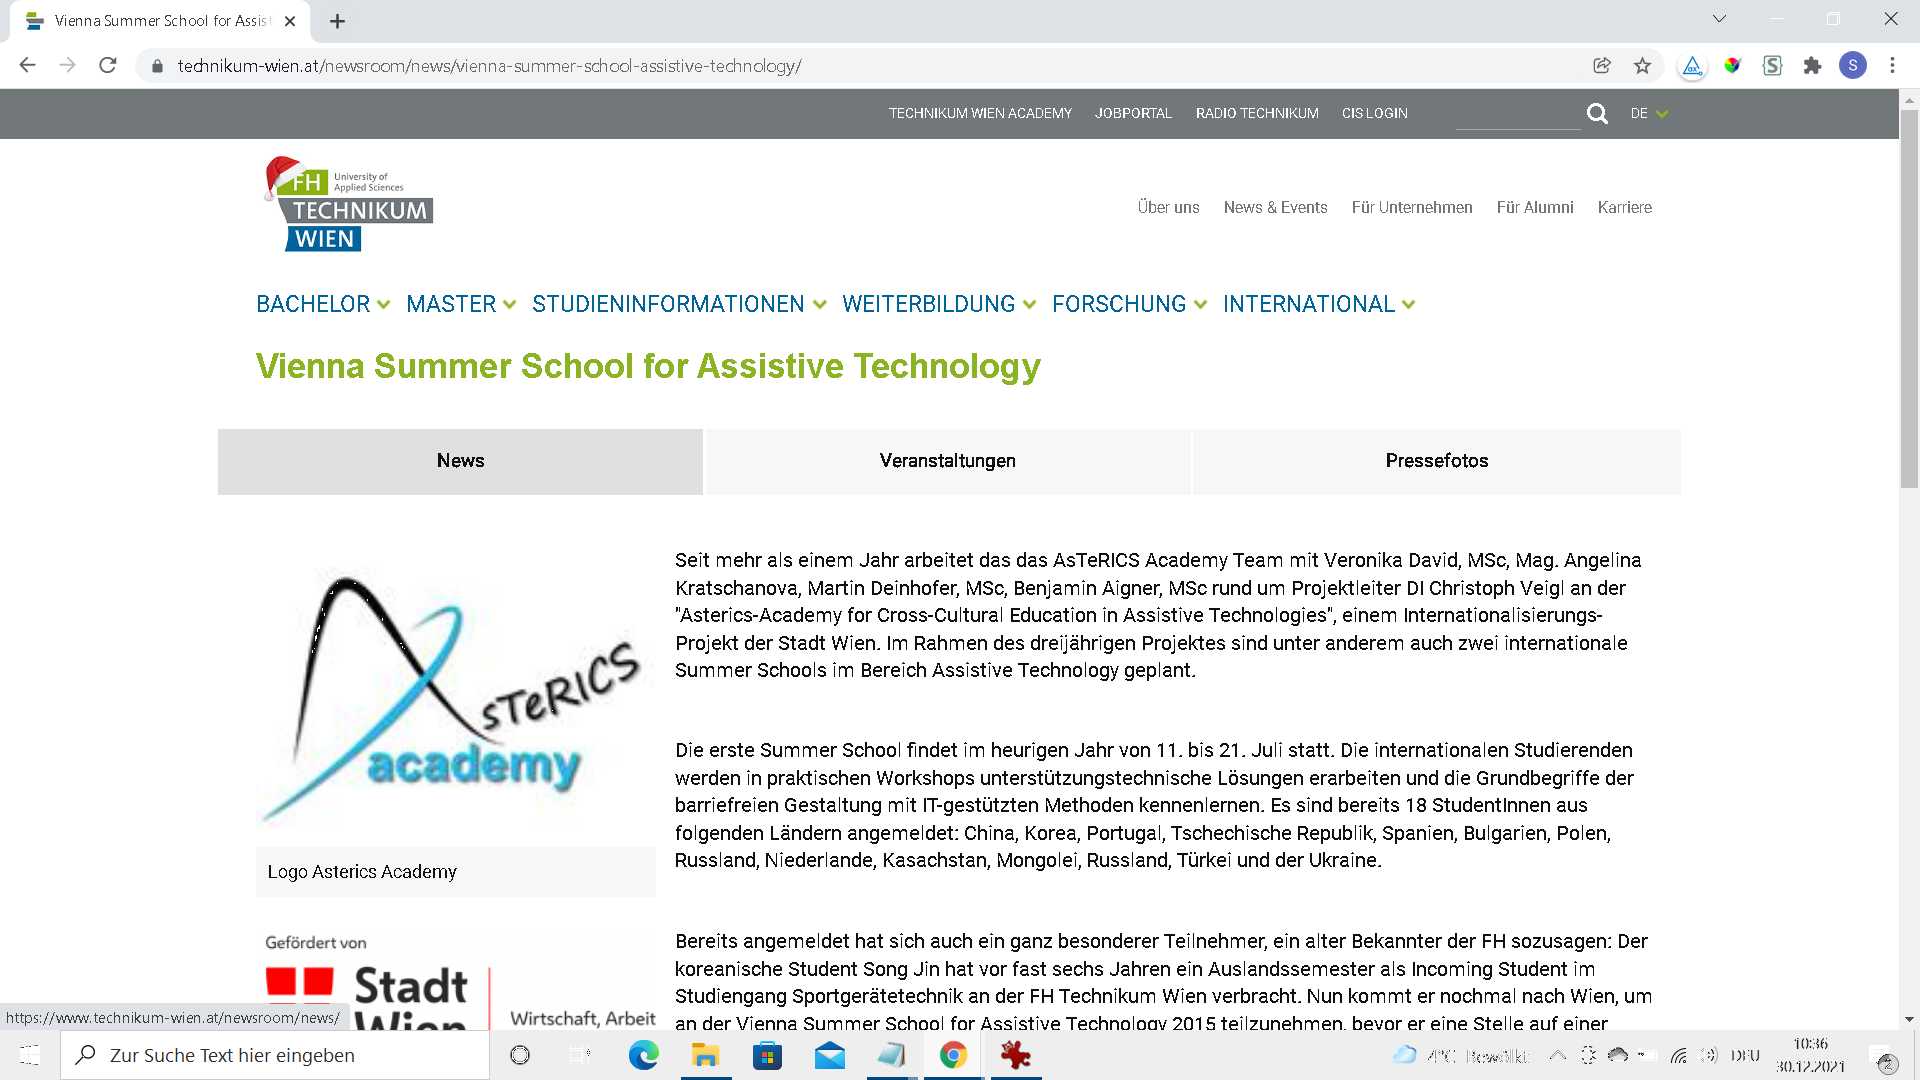 zu Informationen über die Vienna Summer School for Assistive Technology auf der Webseite der FH Technikum Wien